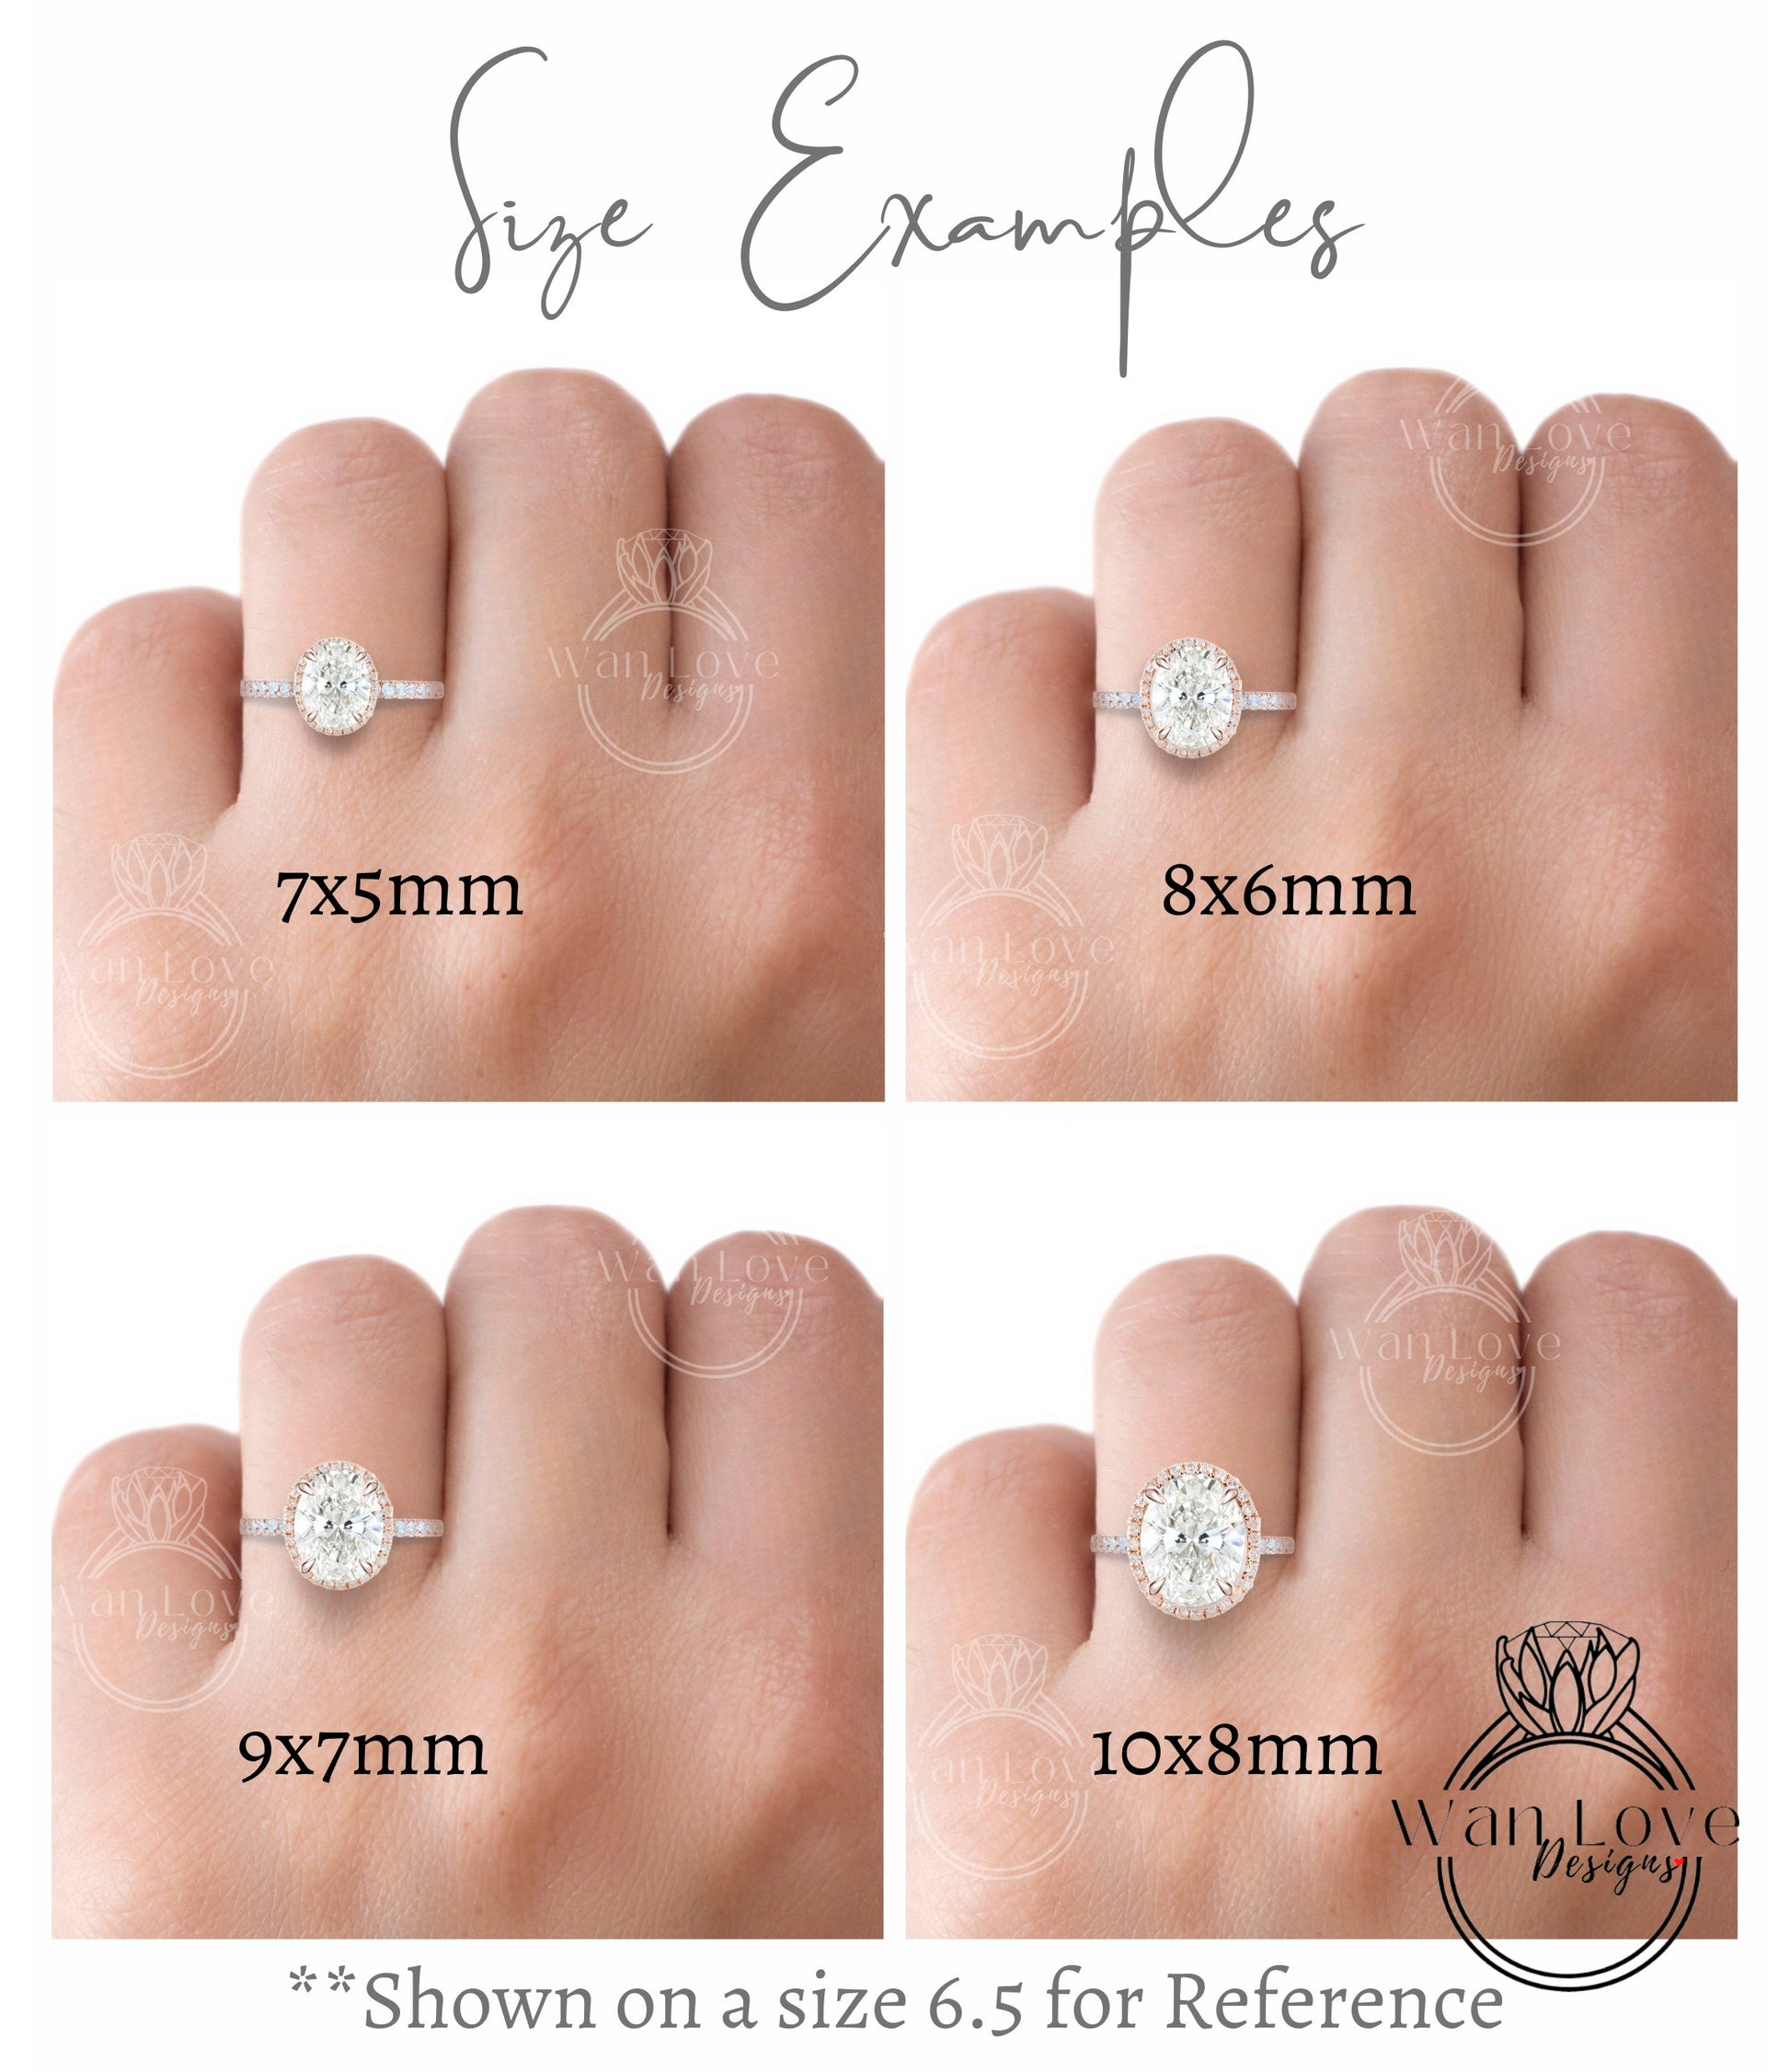 White Sapphire Diamond 14k gold milgrain oval halo engagement ring, sapphire gold engagement ring, gold milgrain ring, vintage inspired